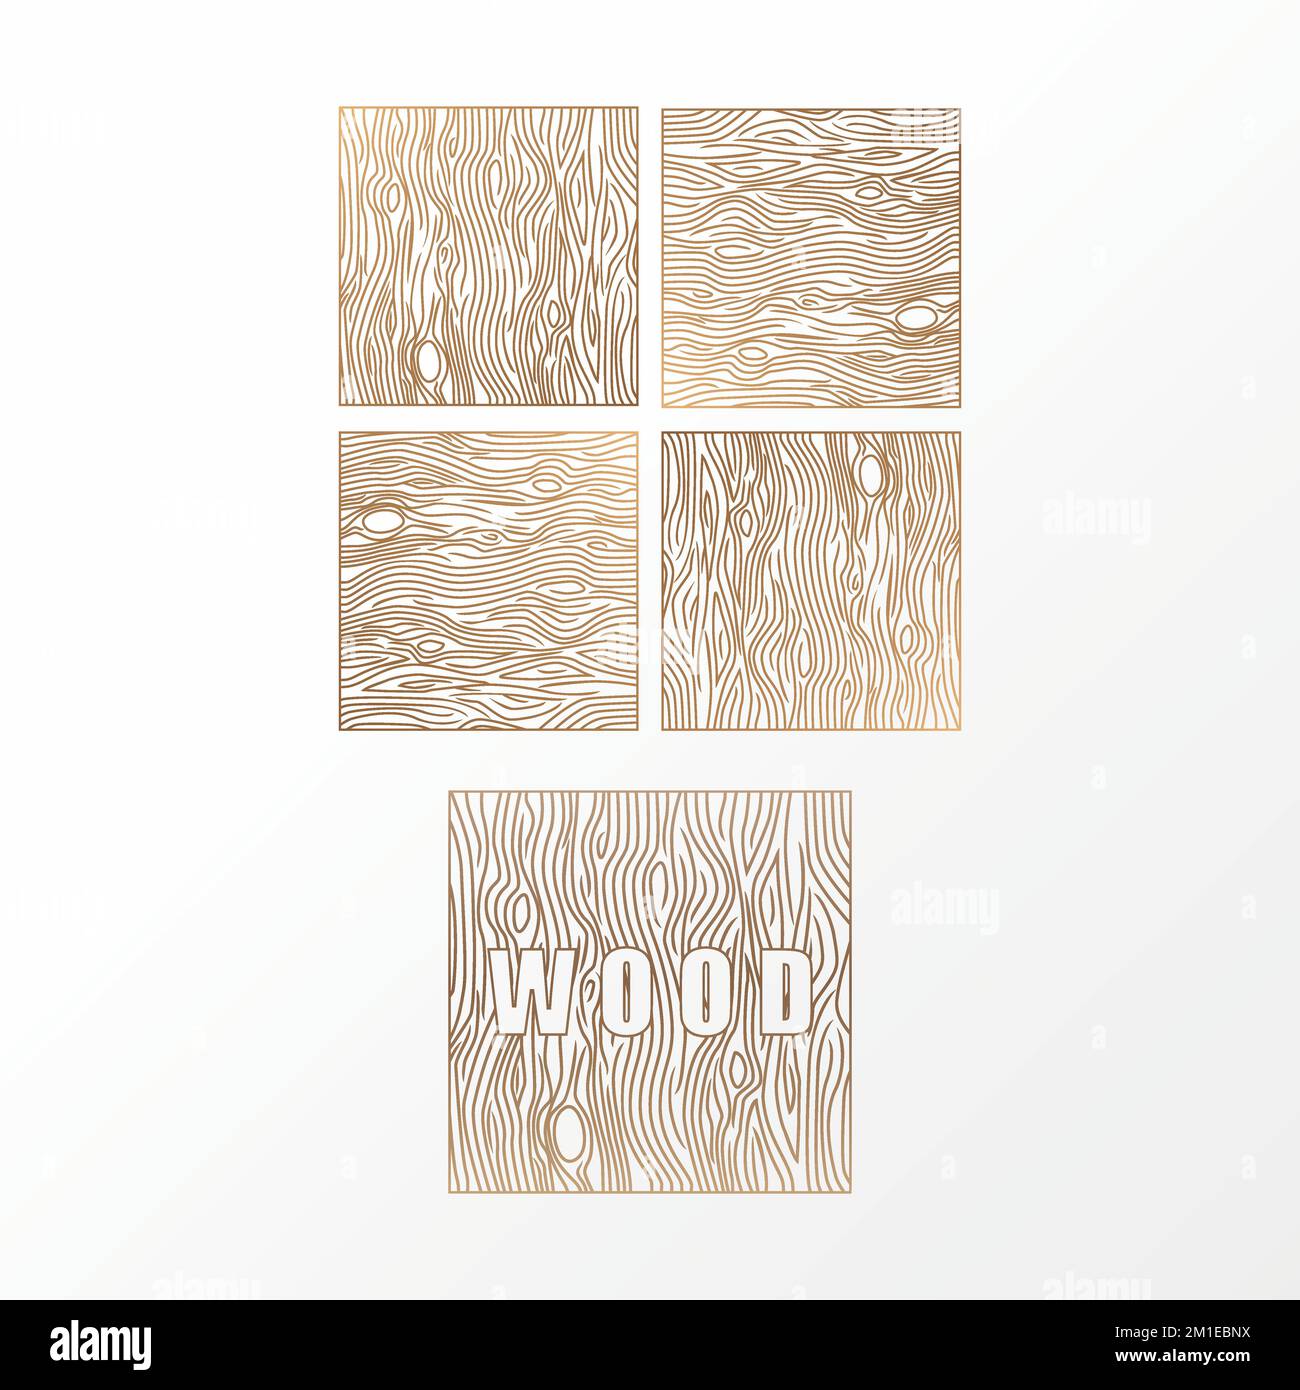 Fantastische Holzstruktur oder Motiv Bildsymbol Logo-Design abstraktes Konzept Vektormaterial. Kann als Symbol im Zusammenhang mit Innenräumen oder Kunst verwendet werden Stock Vektor